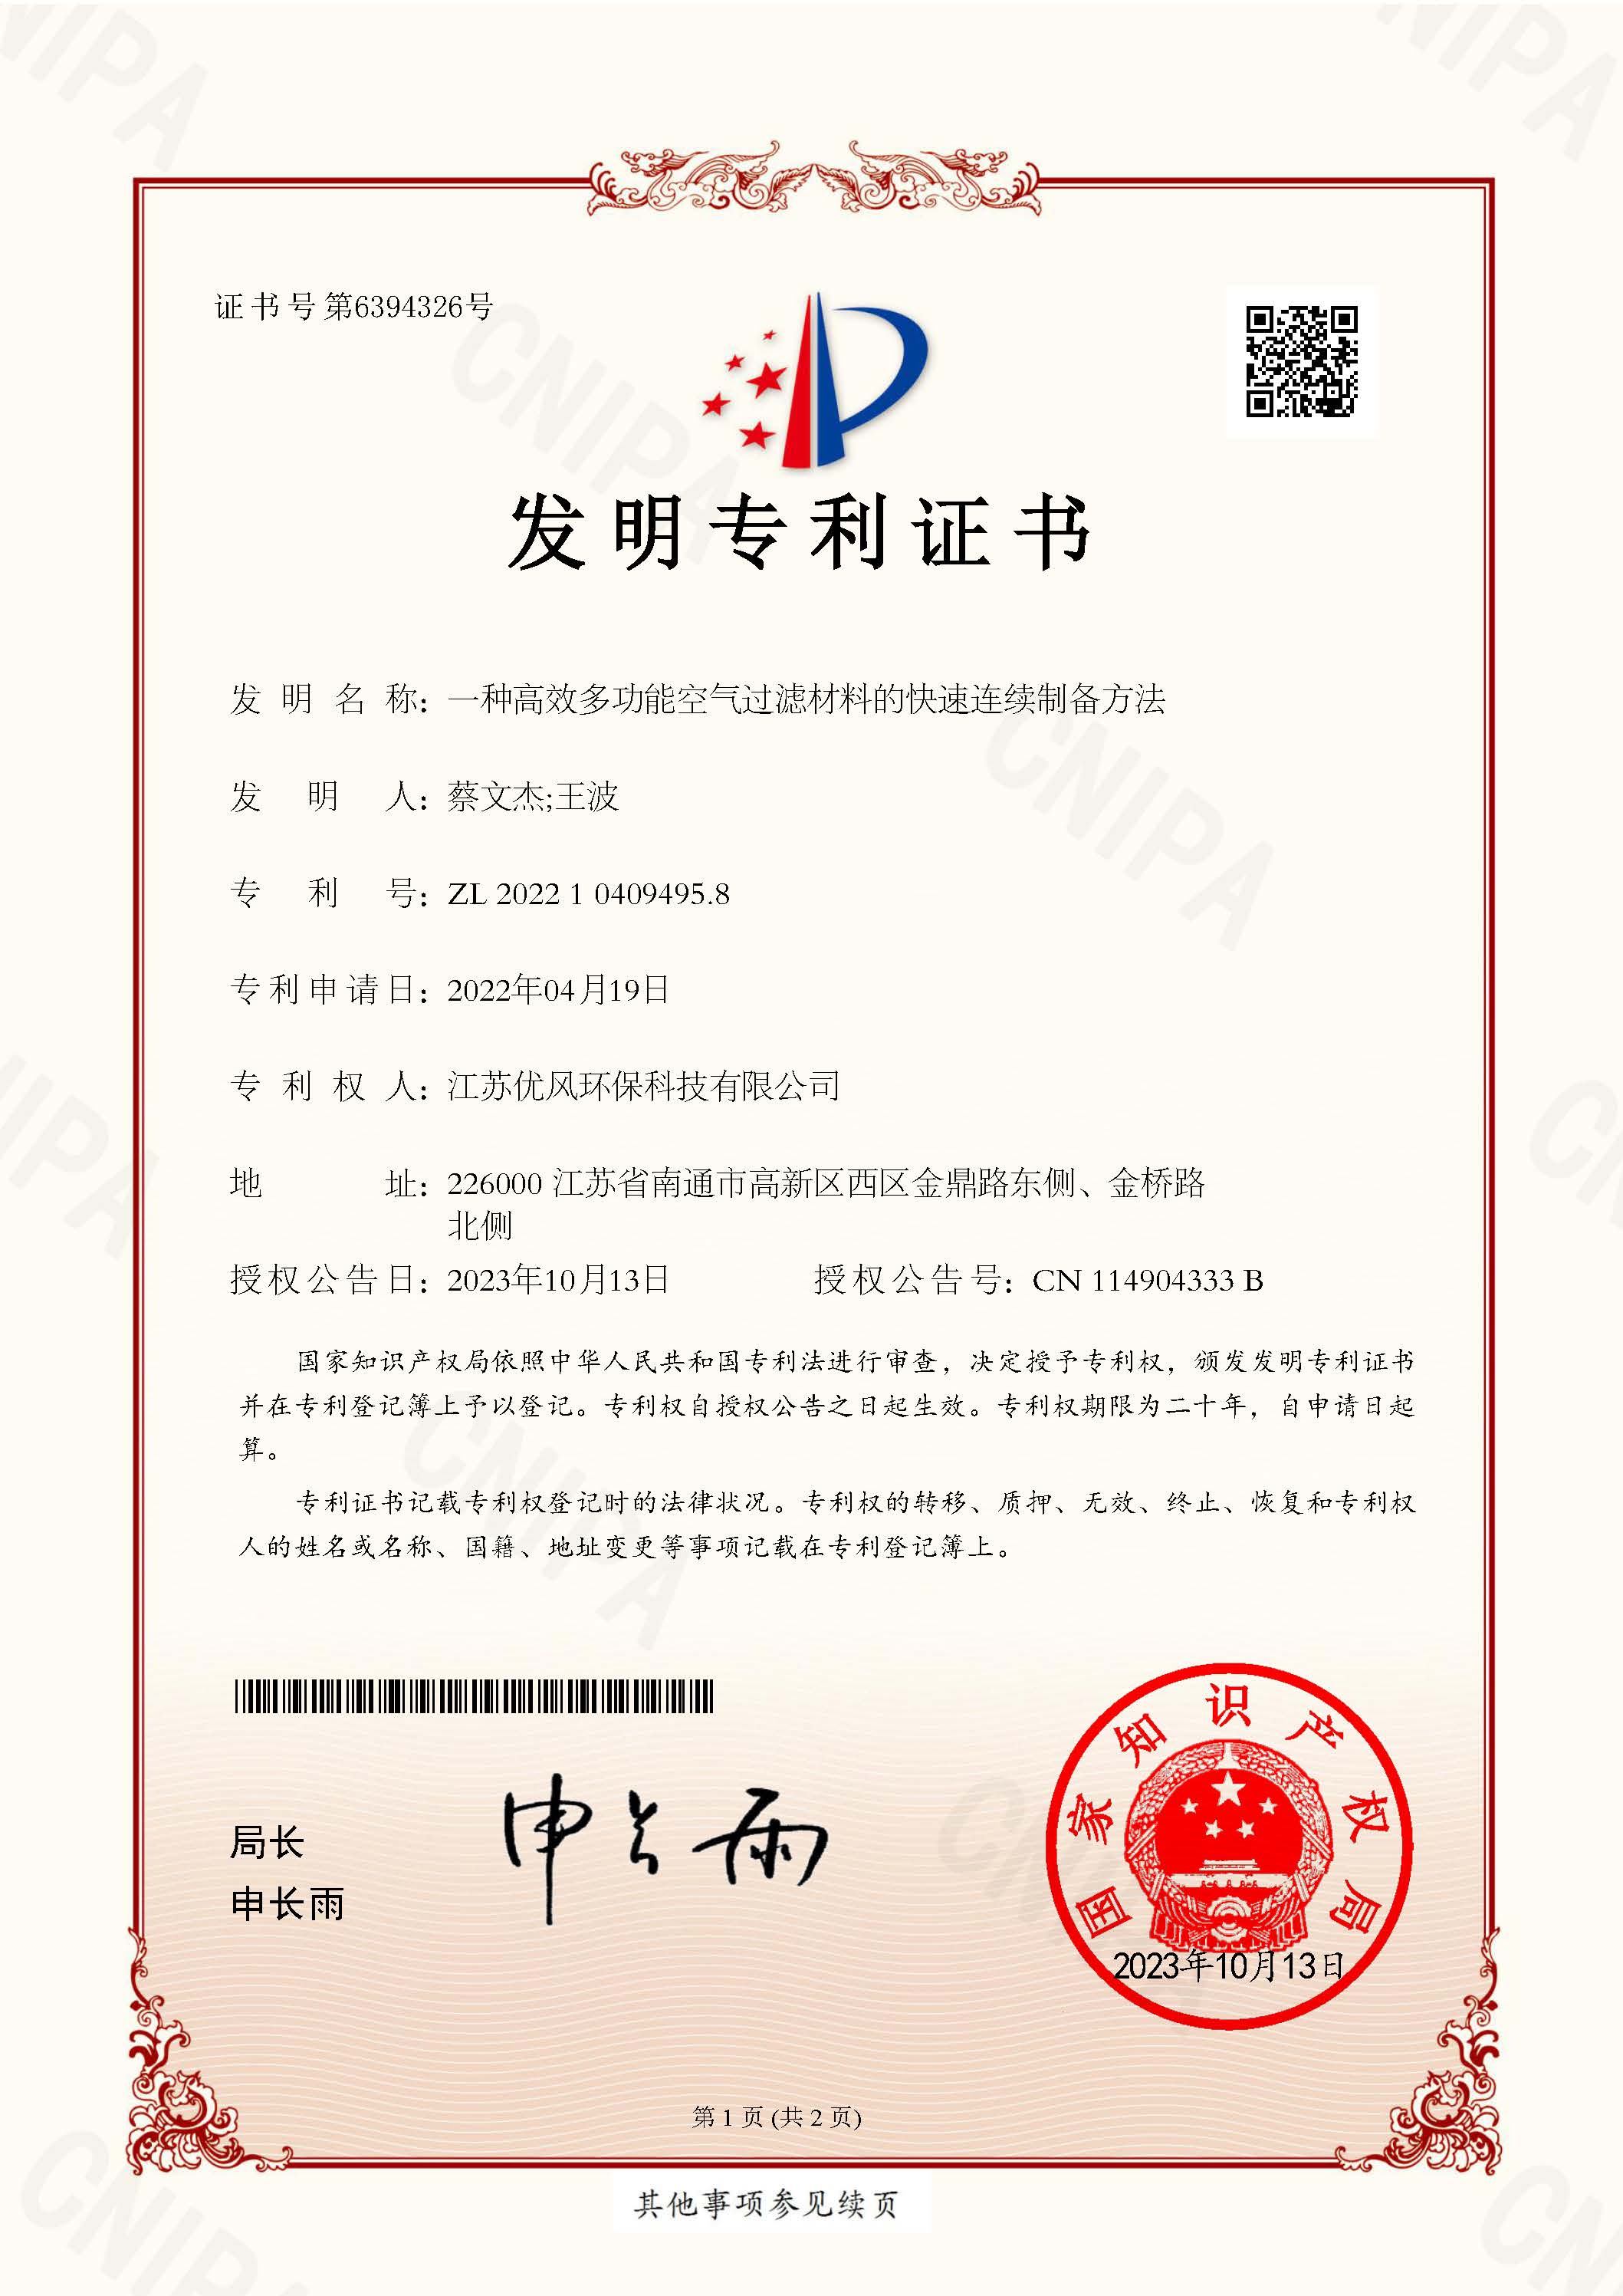 certificado1